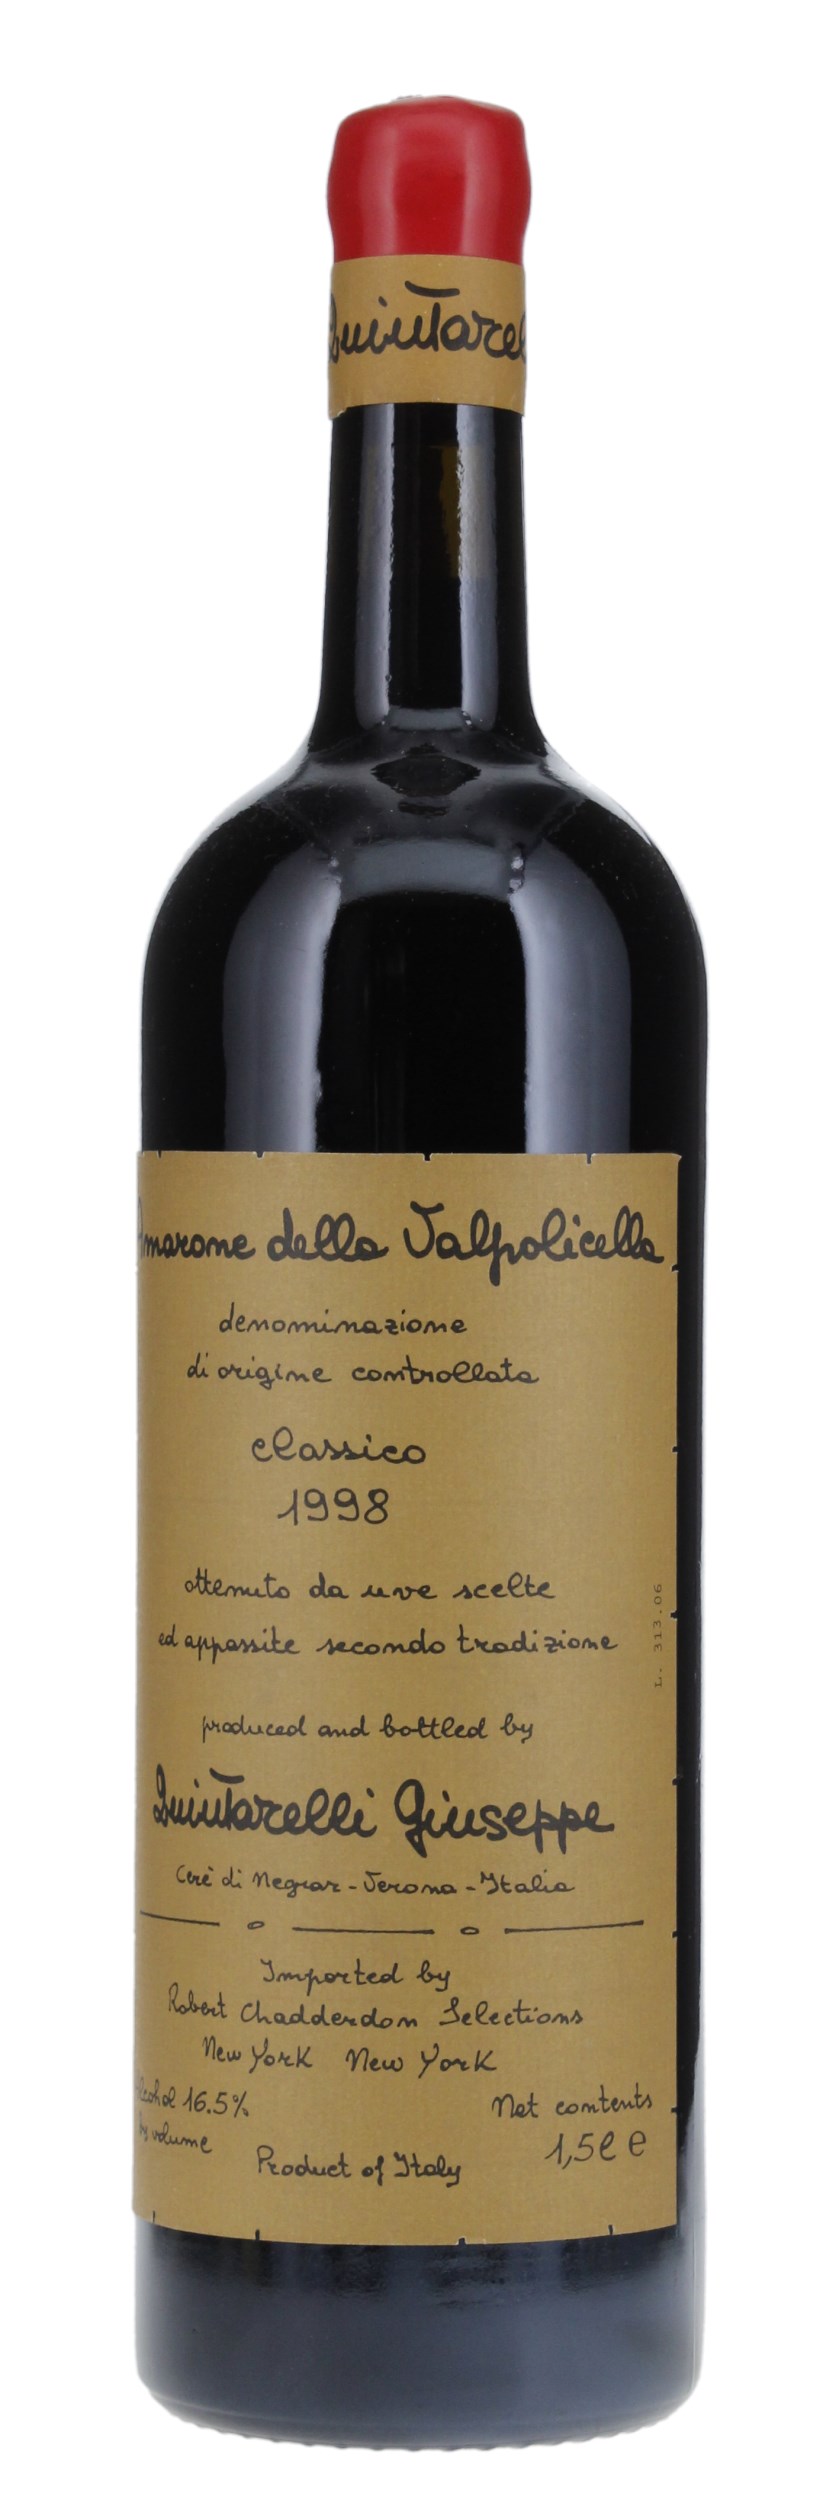 1998 Giuseppe Quintarelli Amarone della Valpolicella Classico, 1.5ltr